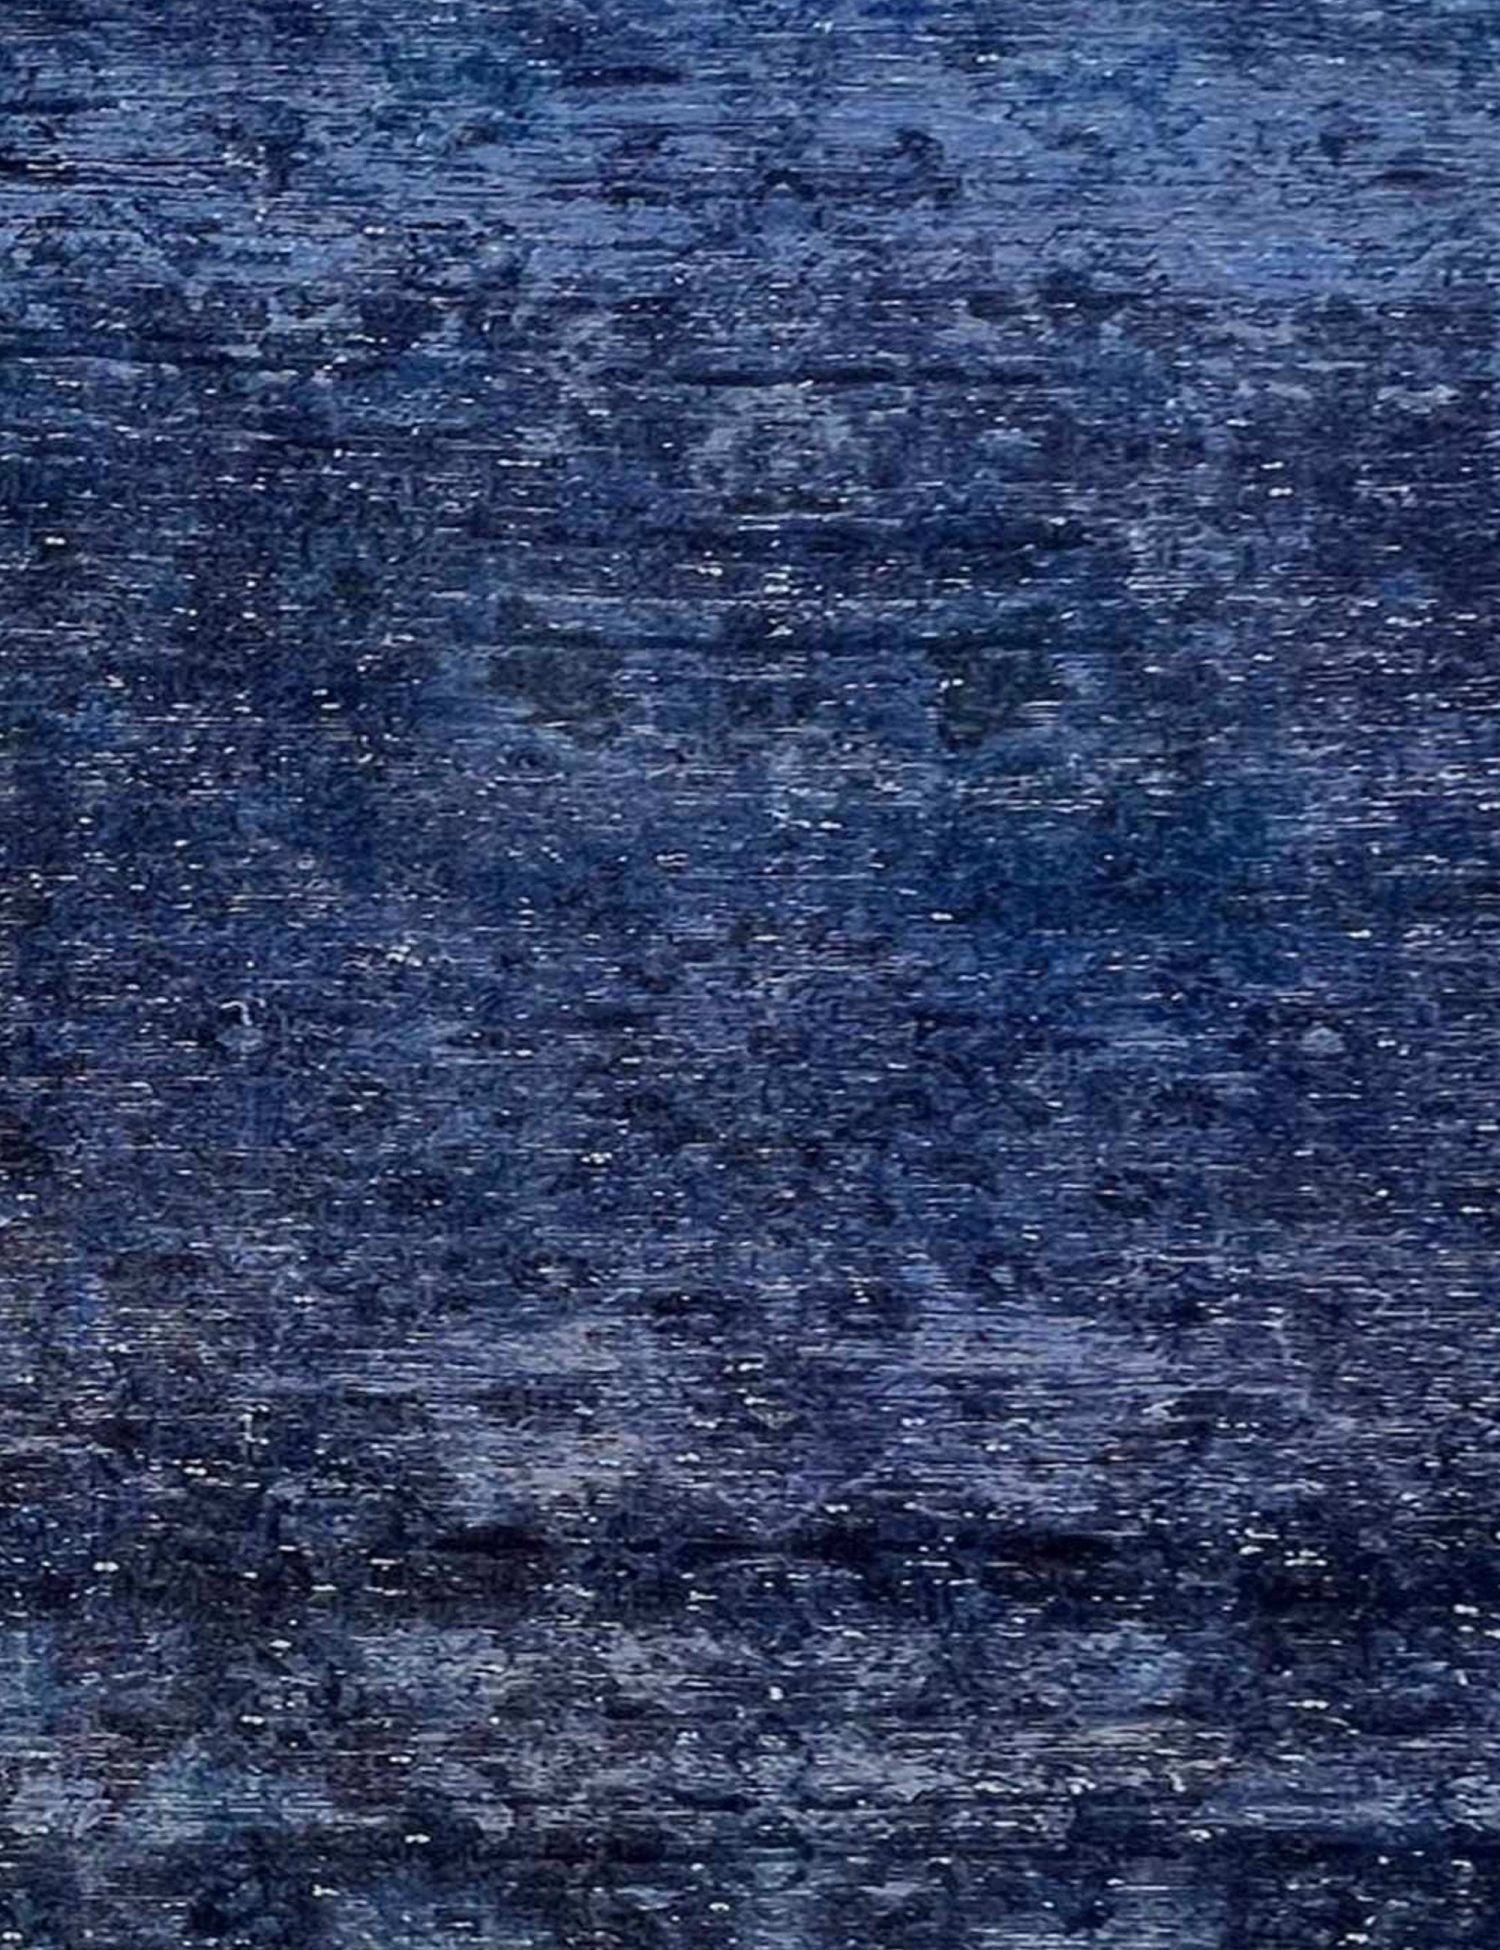 Vintage Teppich  blau <br/>250 x 173 cm